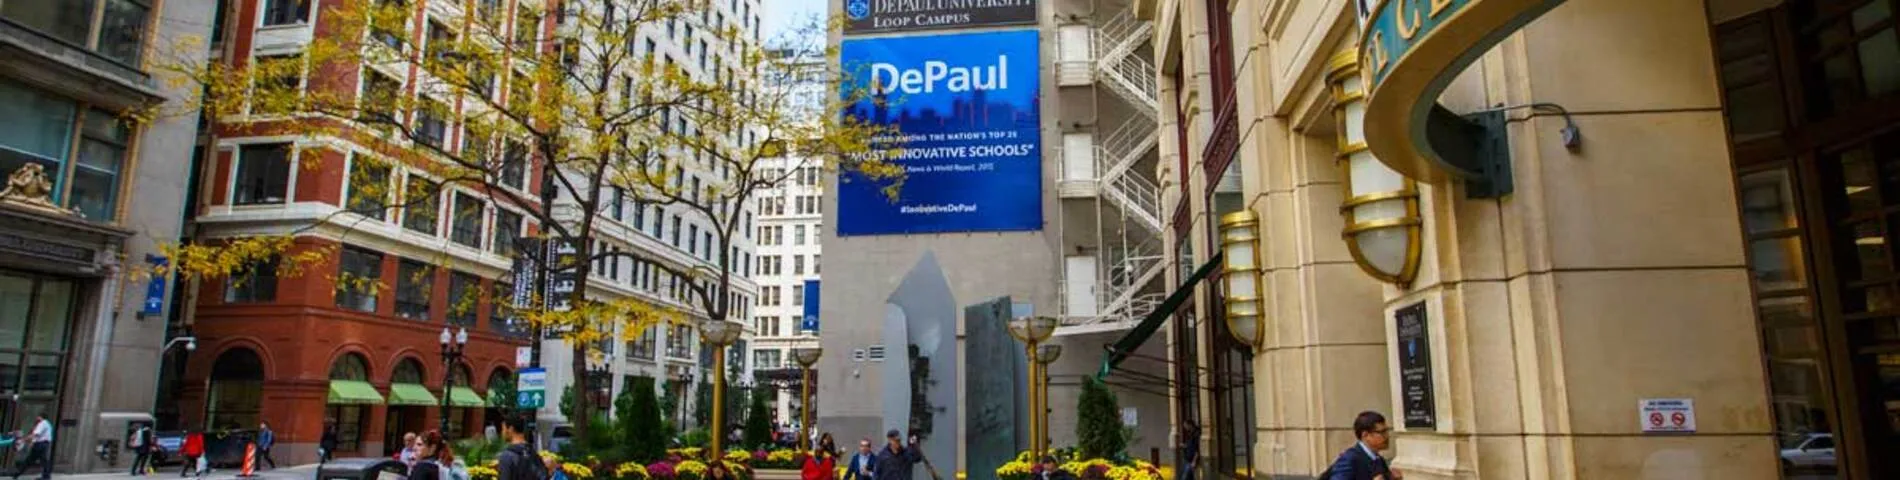 DePaul University English Language Academy (ELA) Bild 1